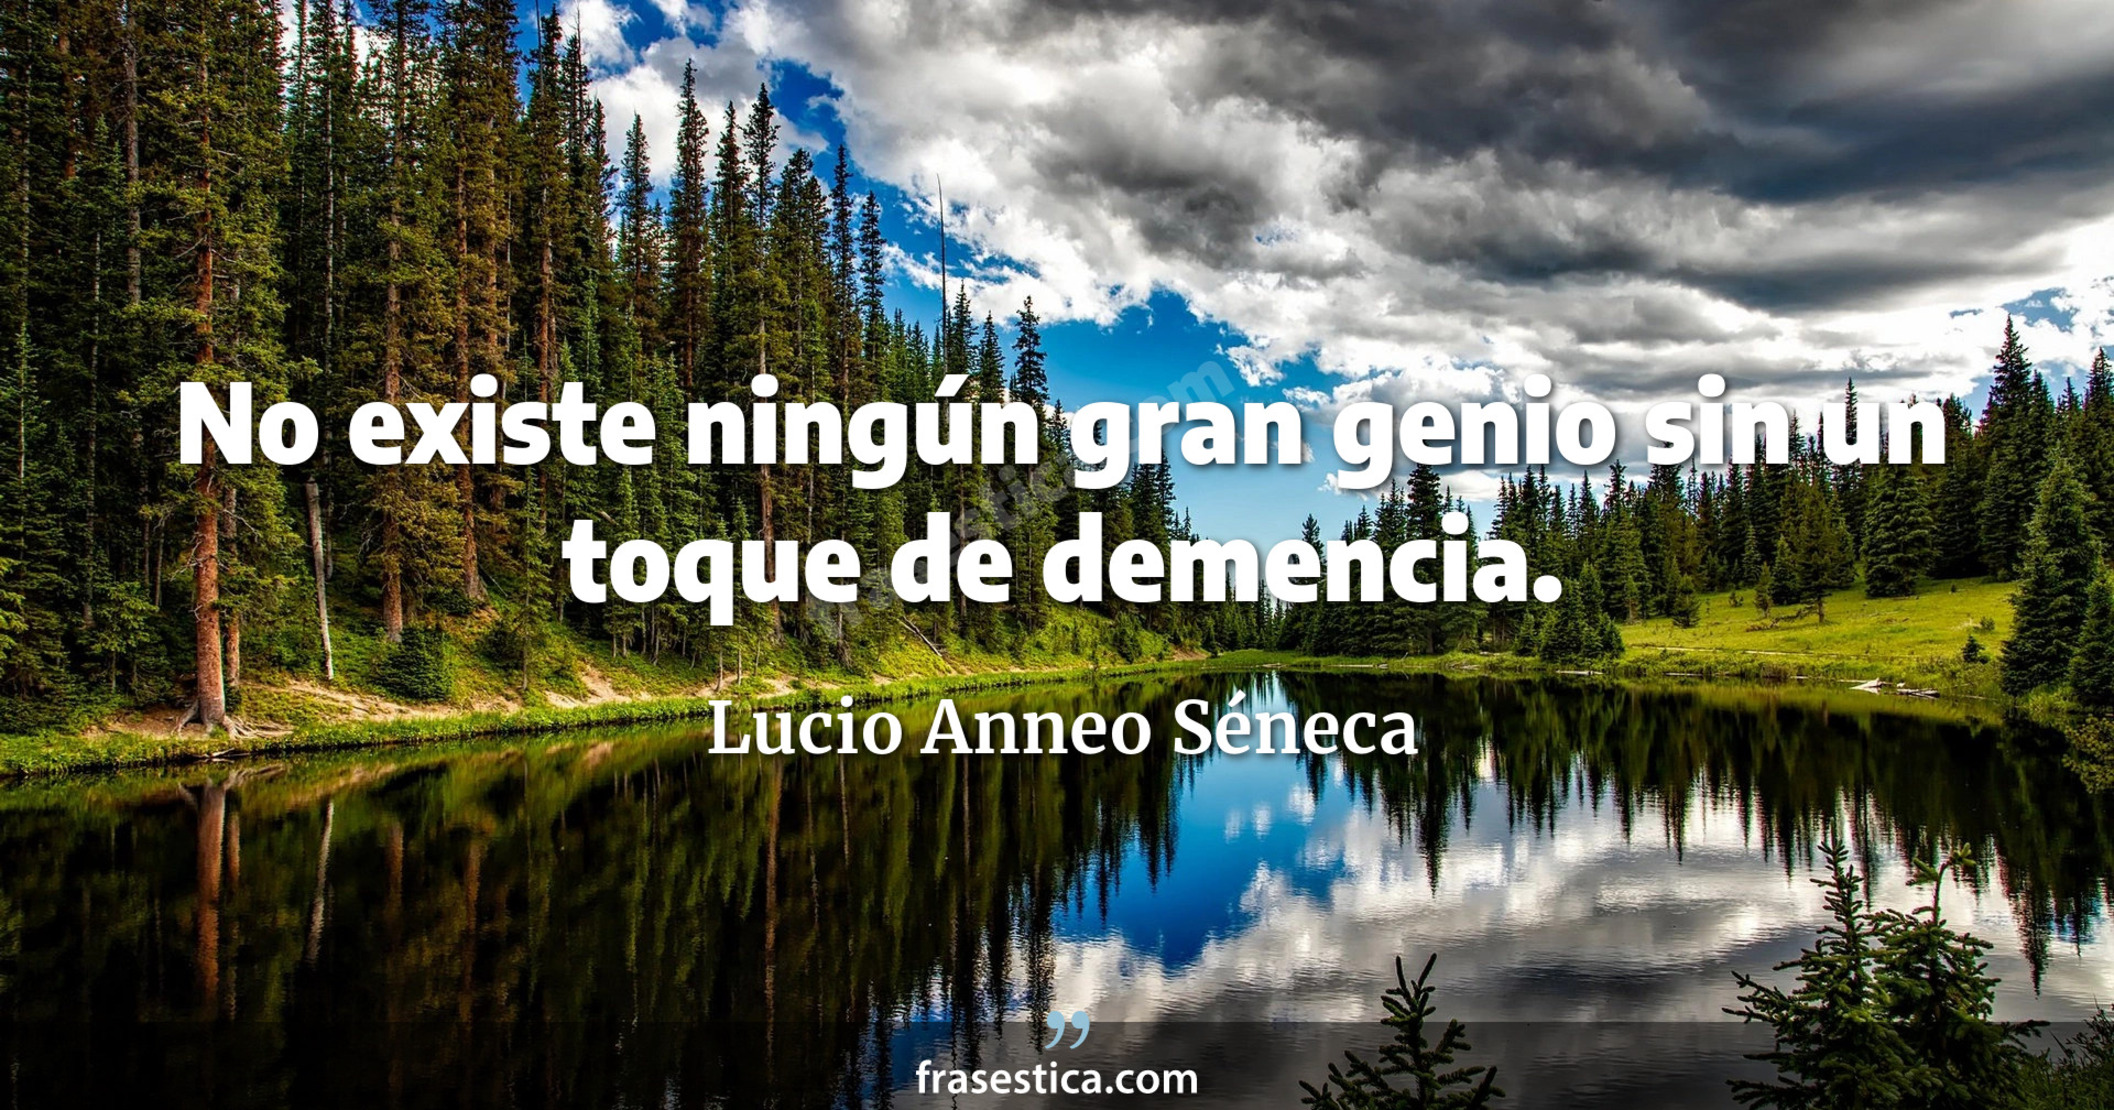 No existe ningún gran genio sin un toque de demencia. - Lucio Anneo Séneca